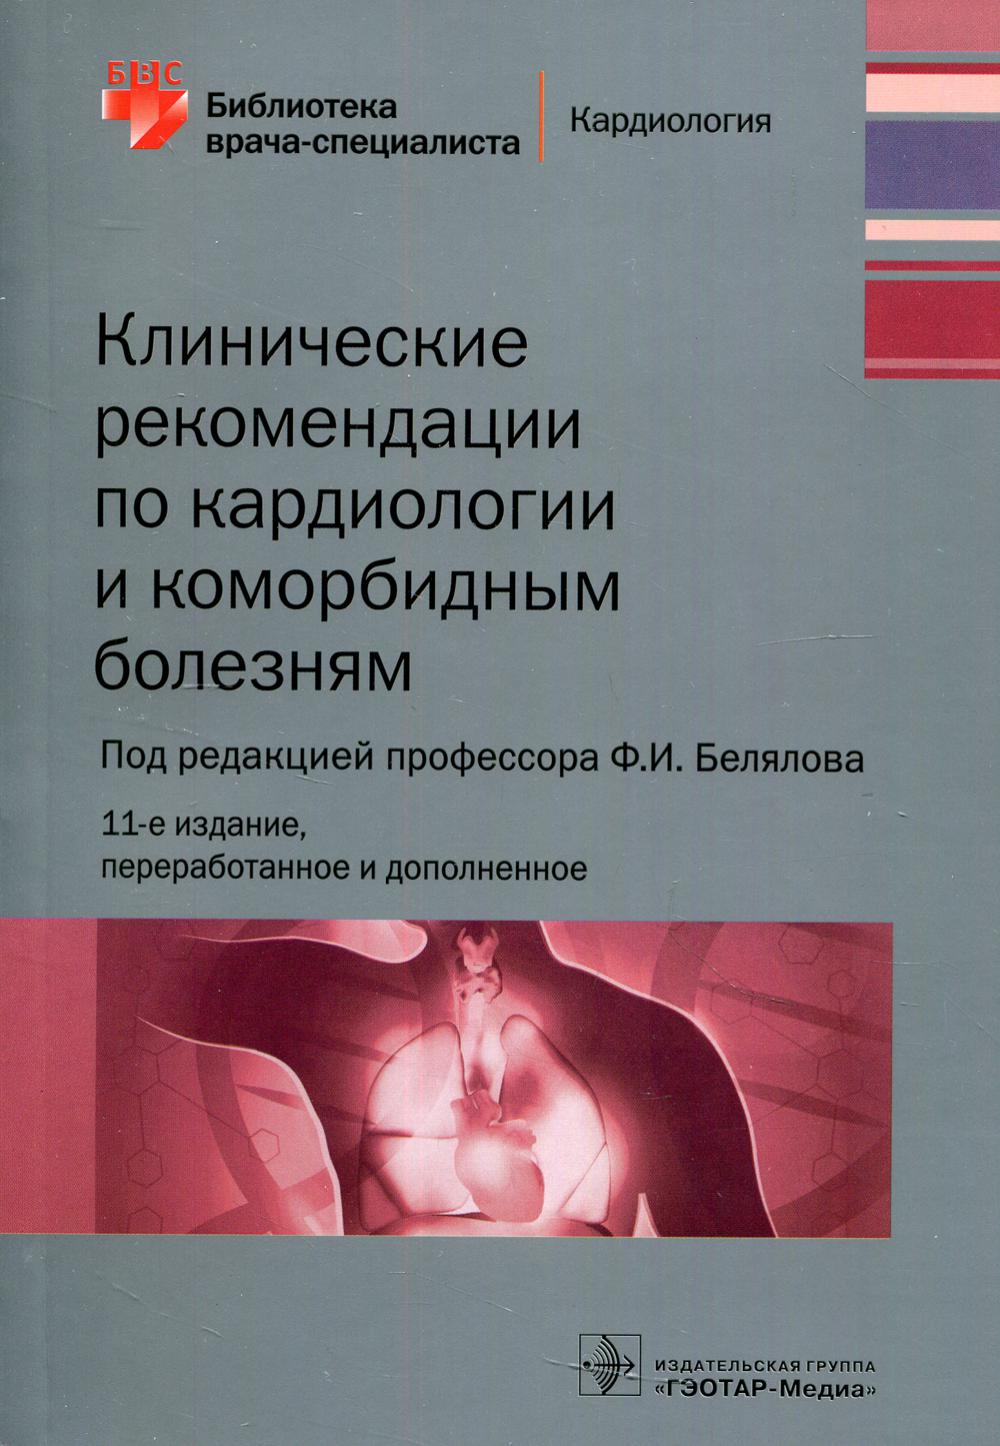 фото Книга клинические рекомендации по кардиологии и коморбидным болезням гэотар-медиа